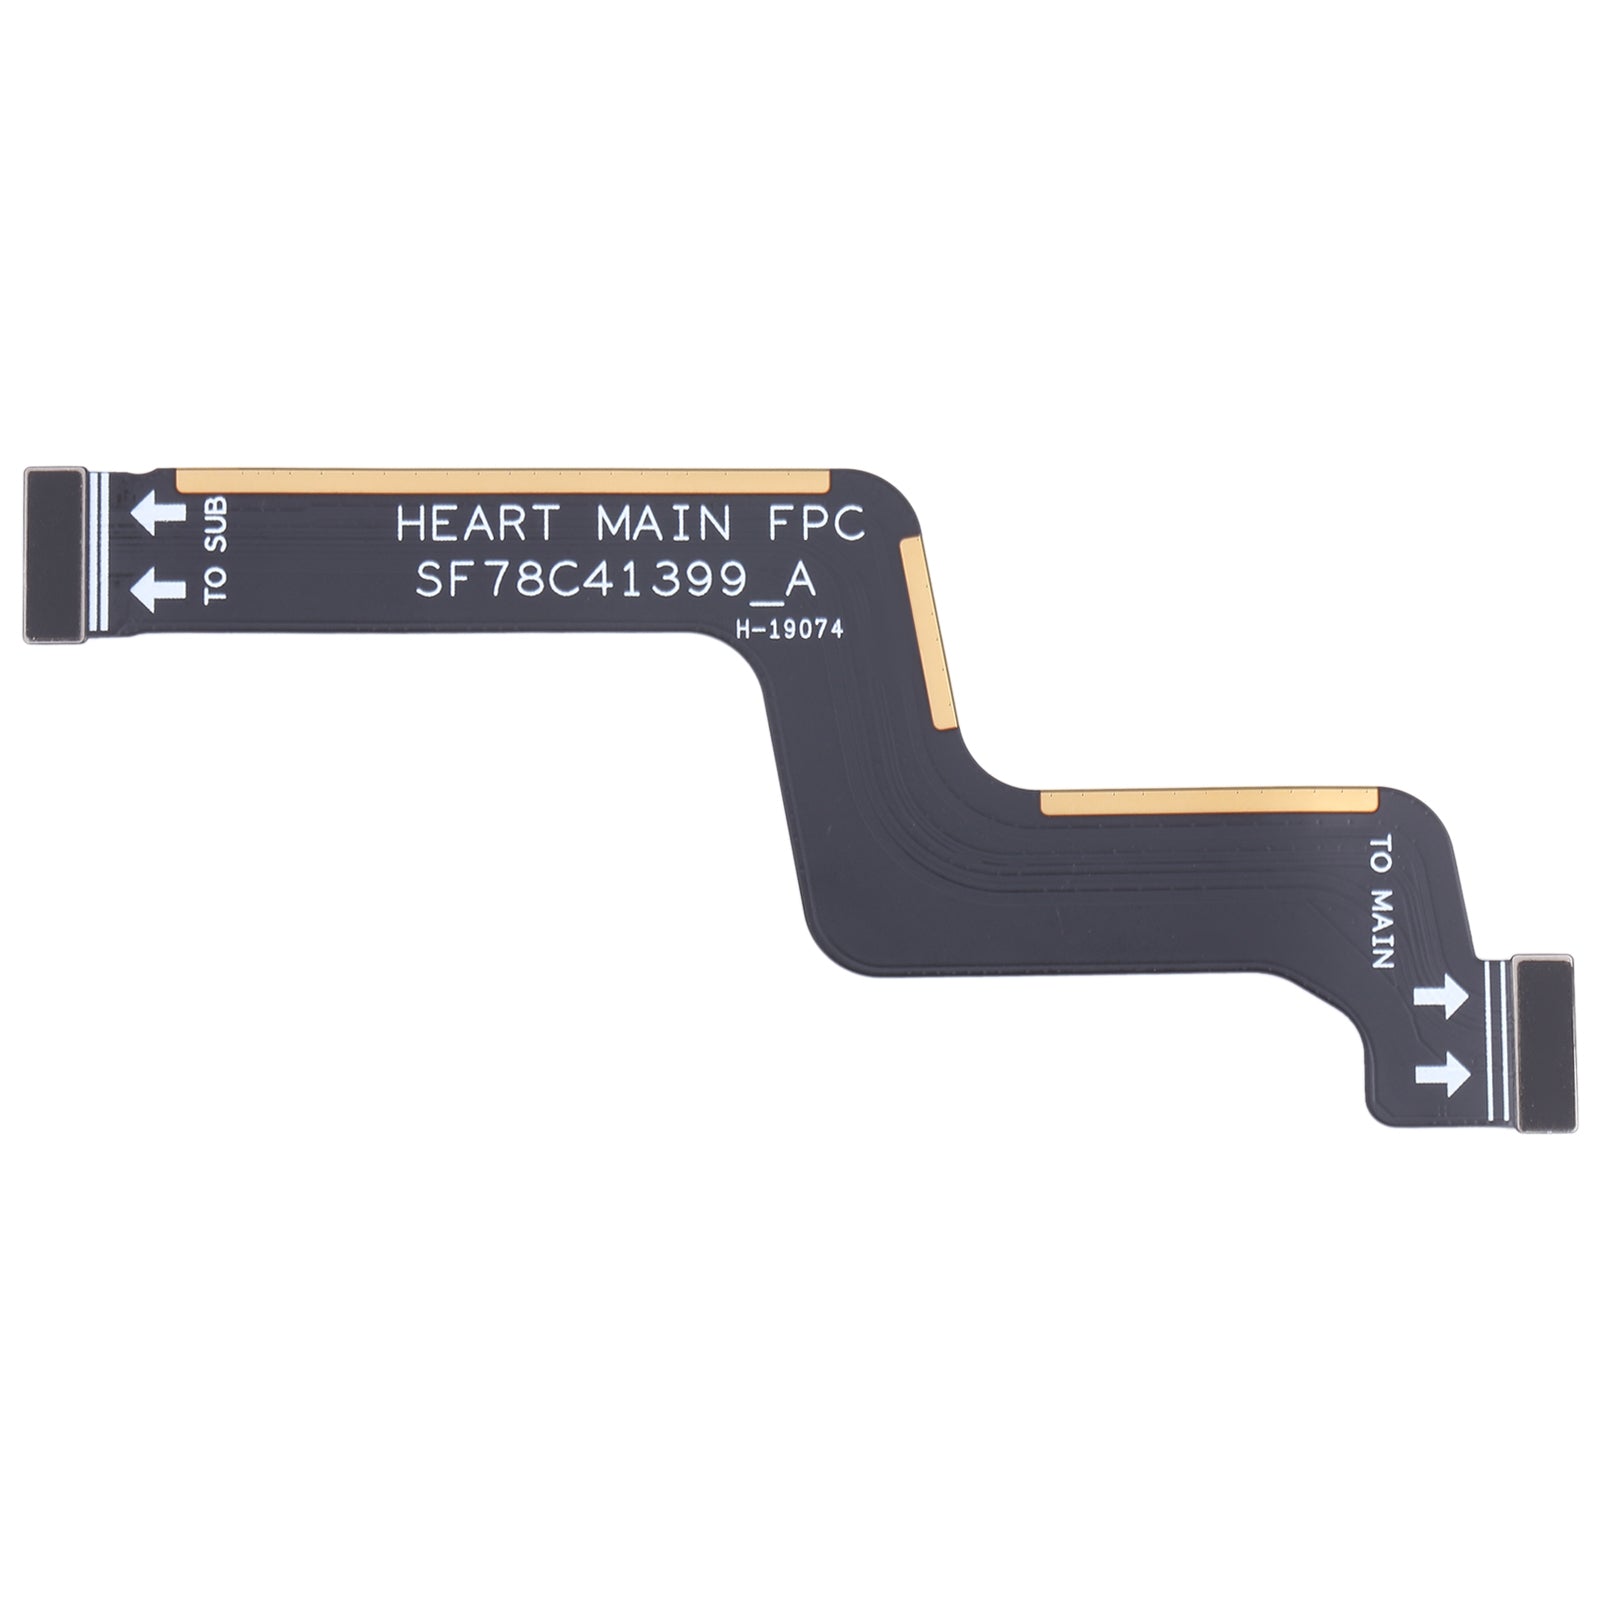 Lenovo Z5 Pro GT L78032 Board Connector Flex Cable